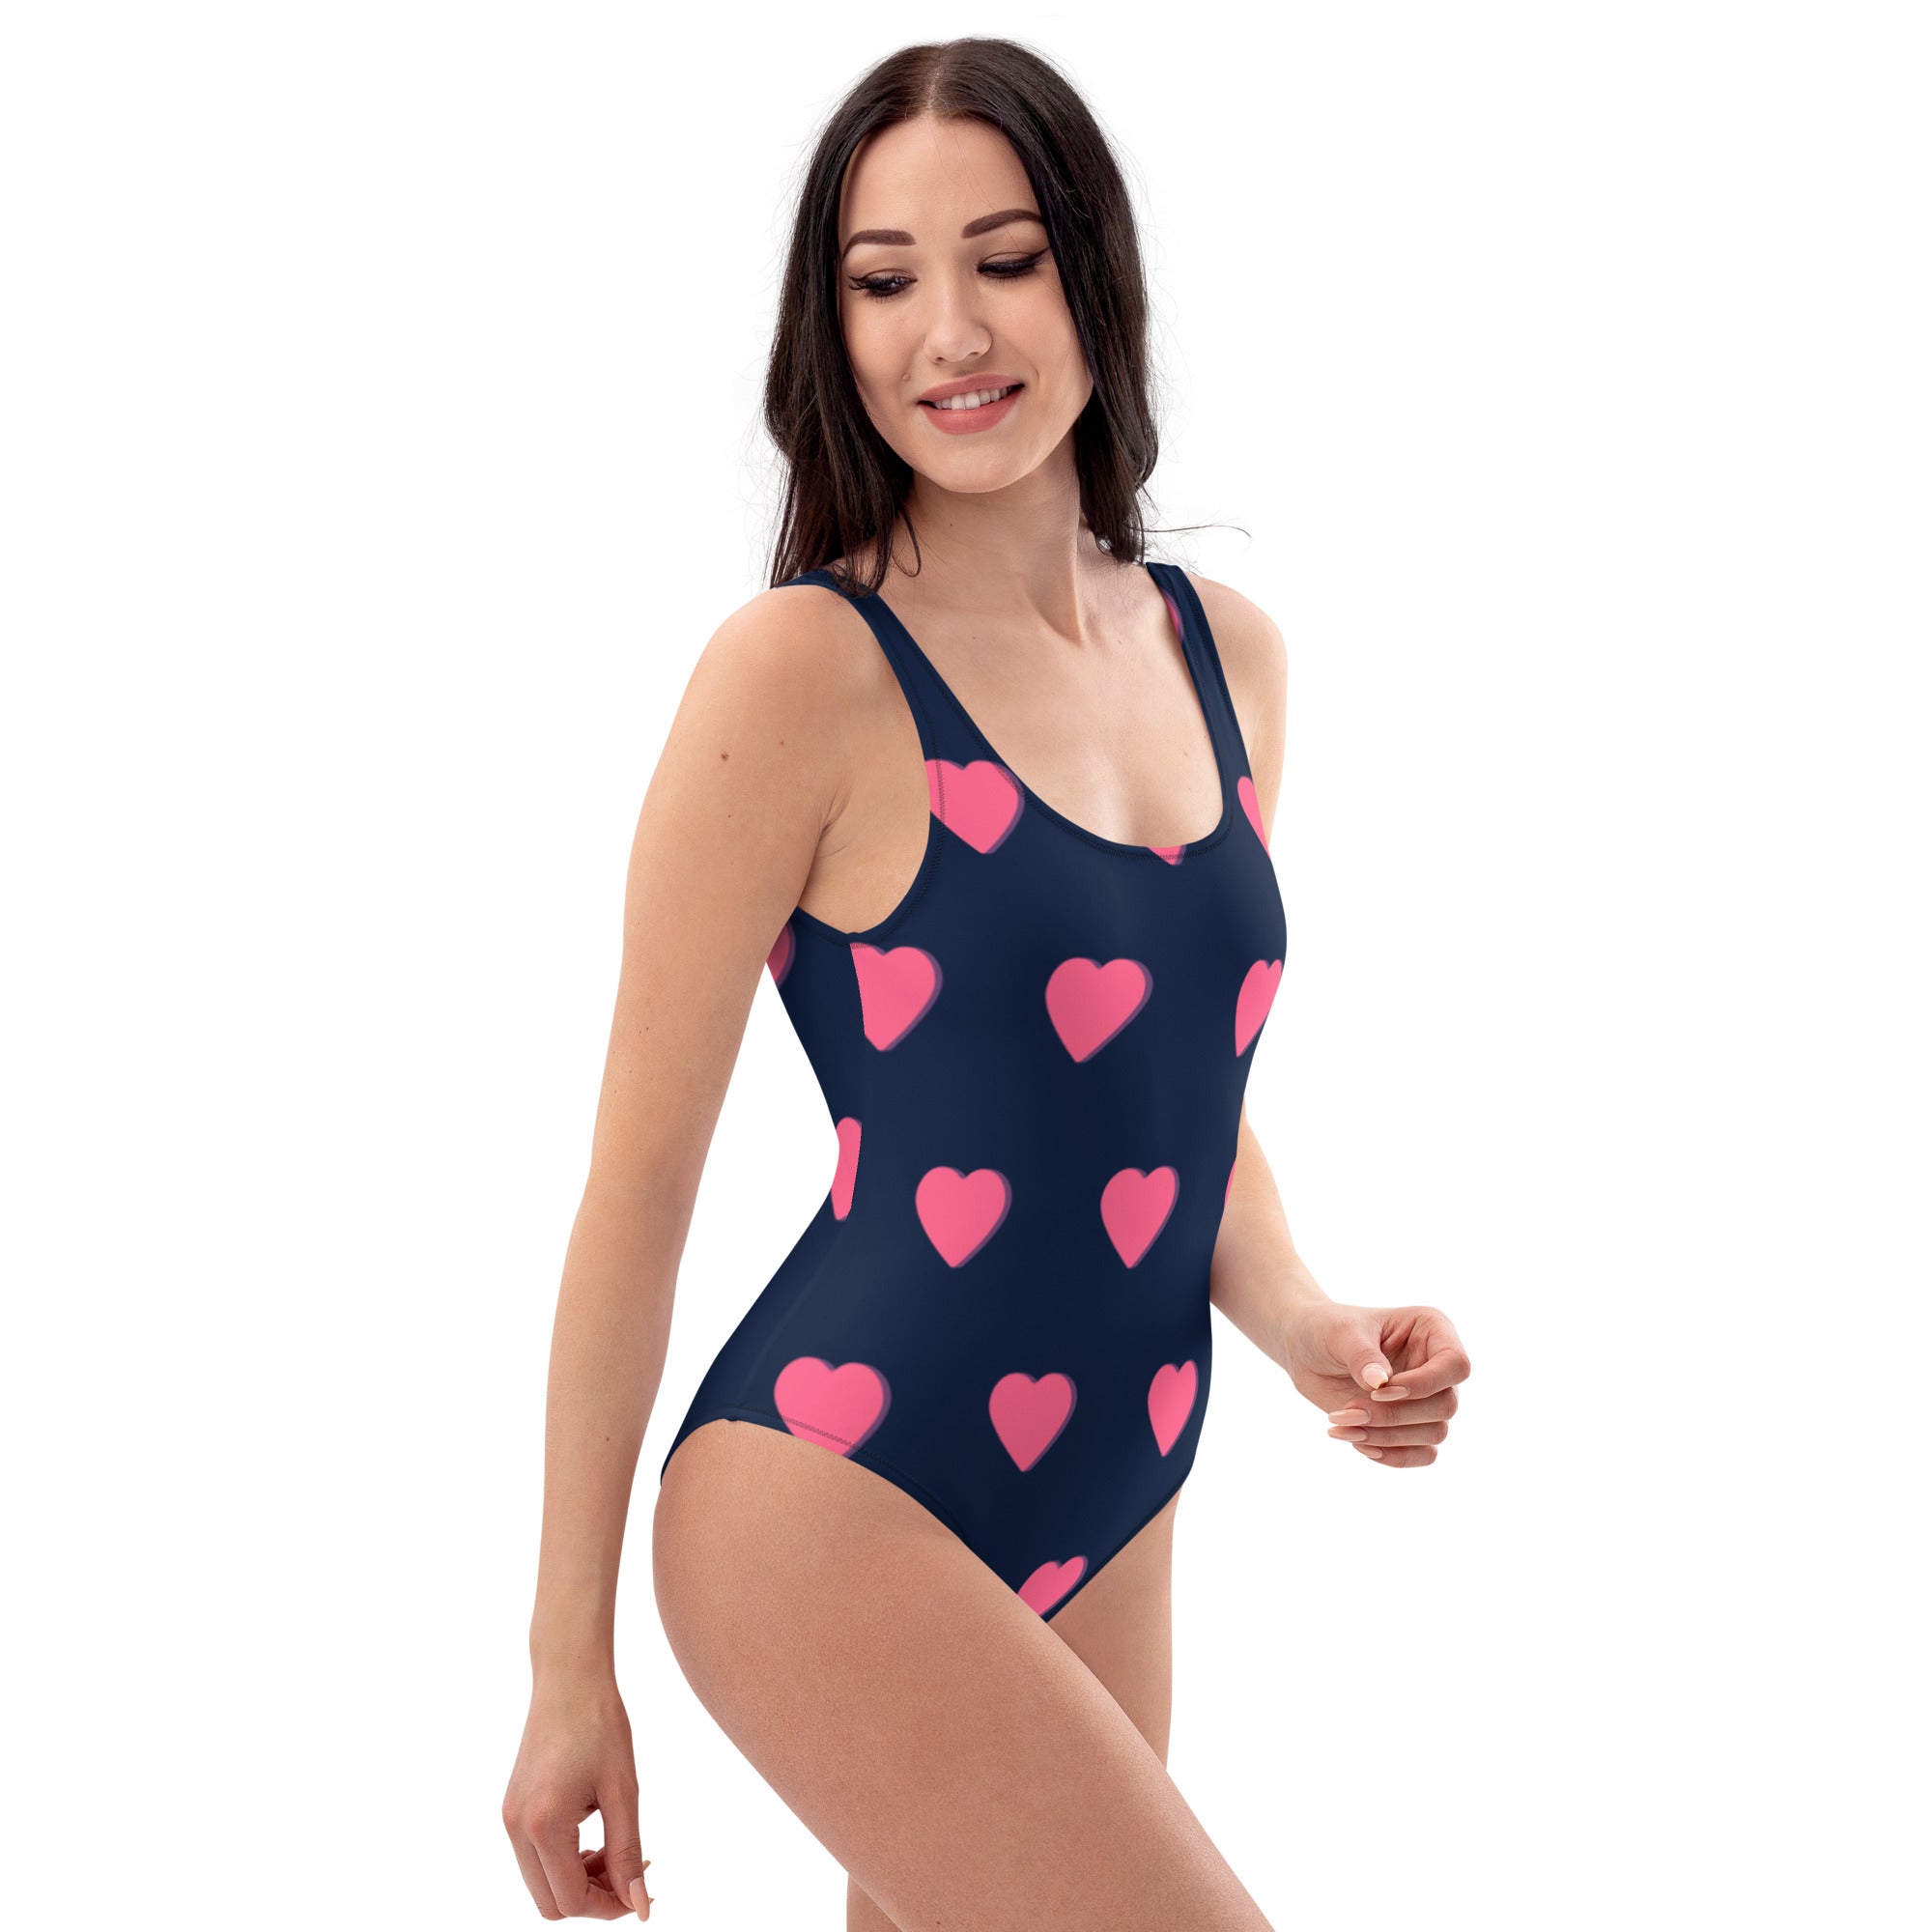 Lovestruck Hearts One-Piece Swimsuit